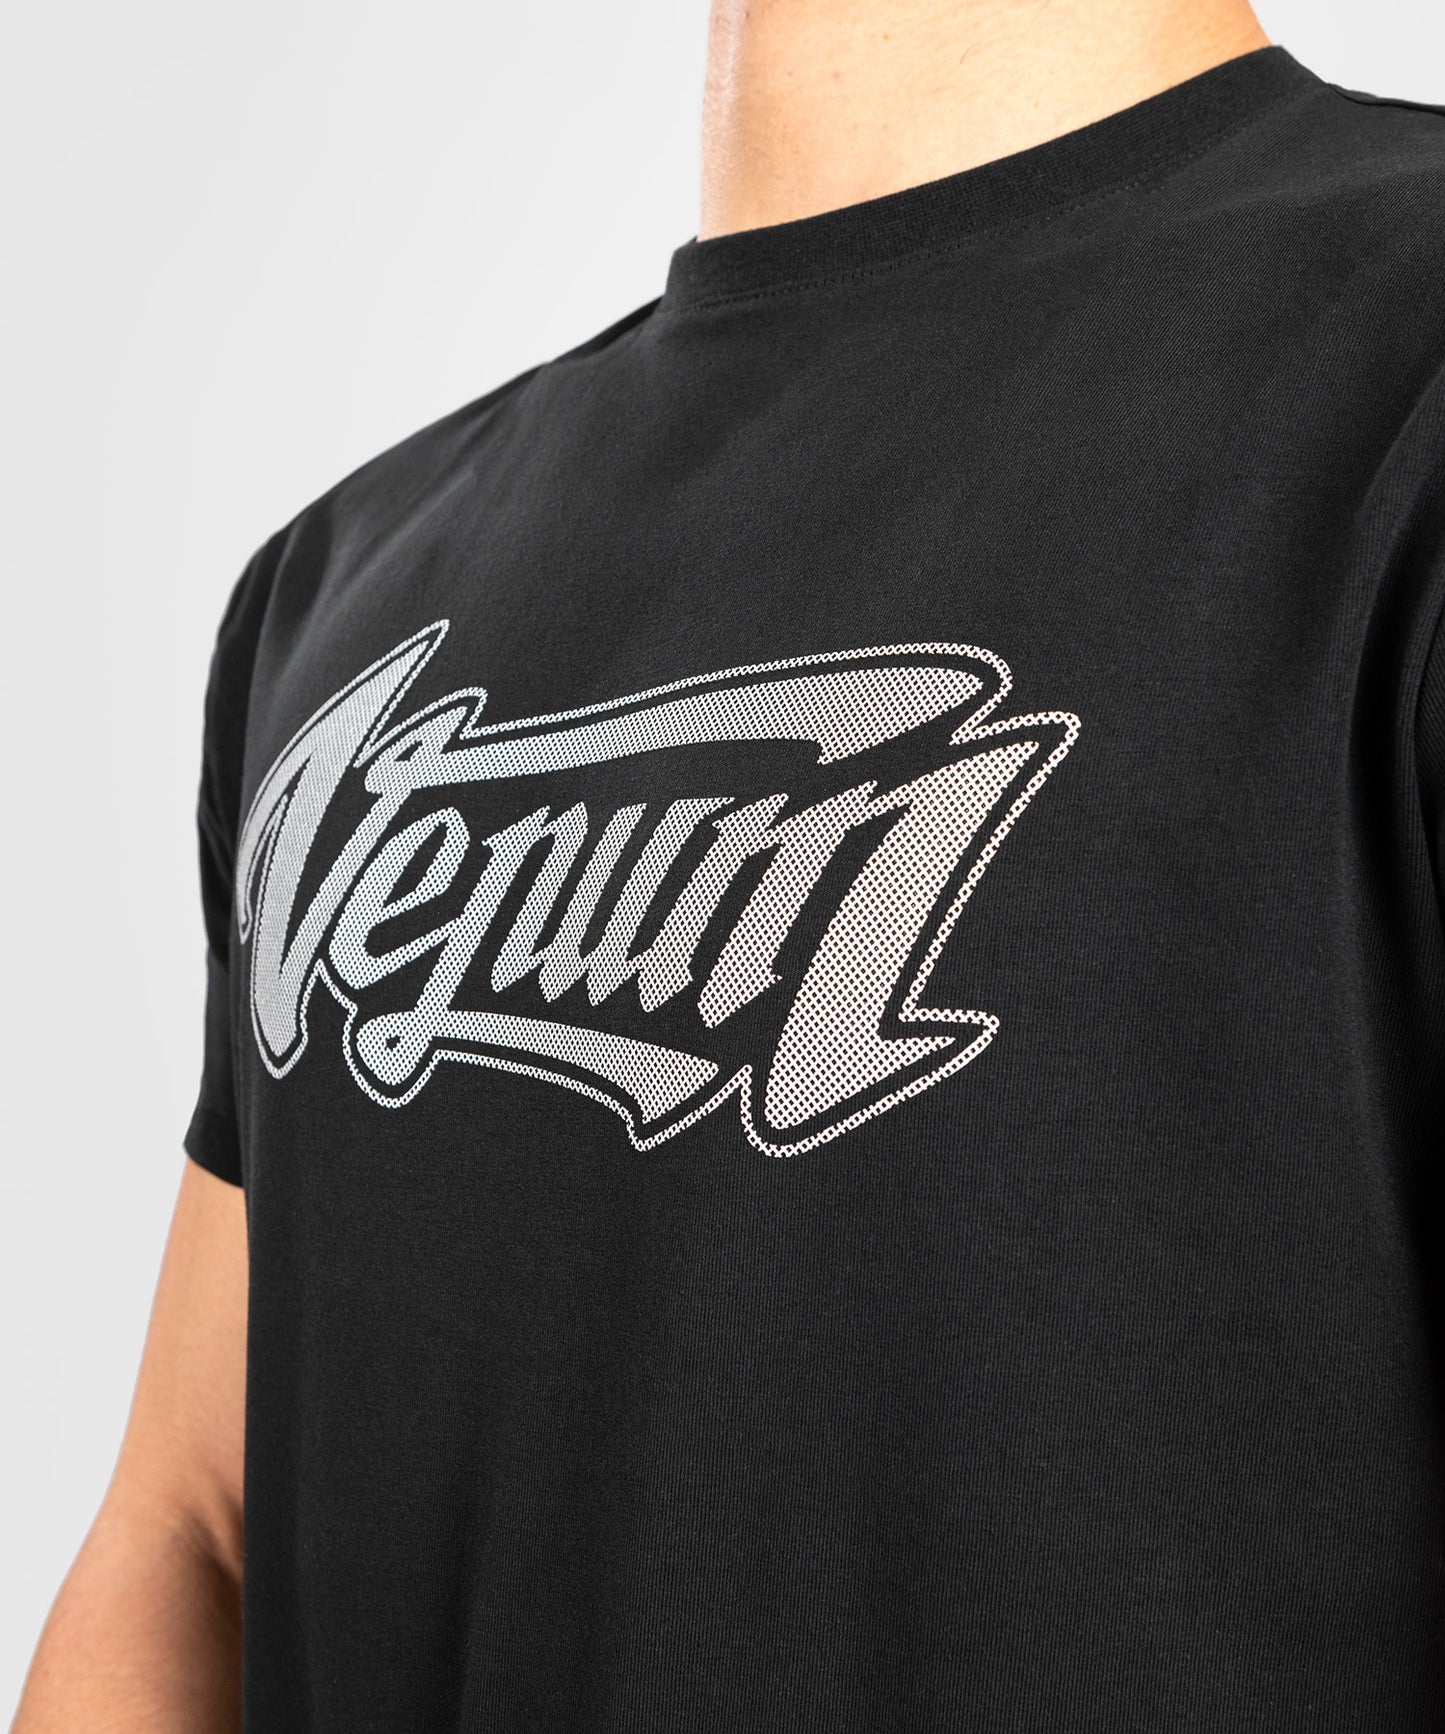 Venum Absolute 2.0 T-Shirt - Enganliegende Passform - Schwarz/Silber